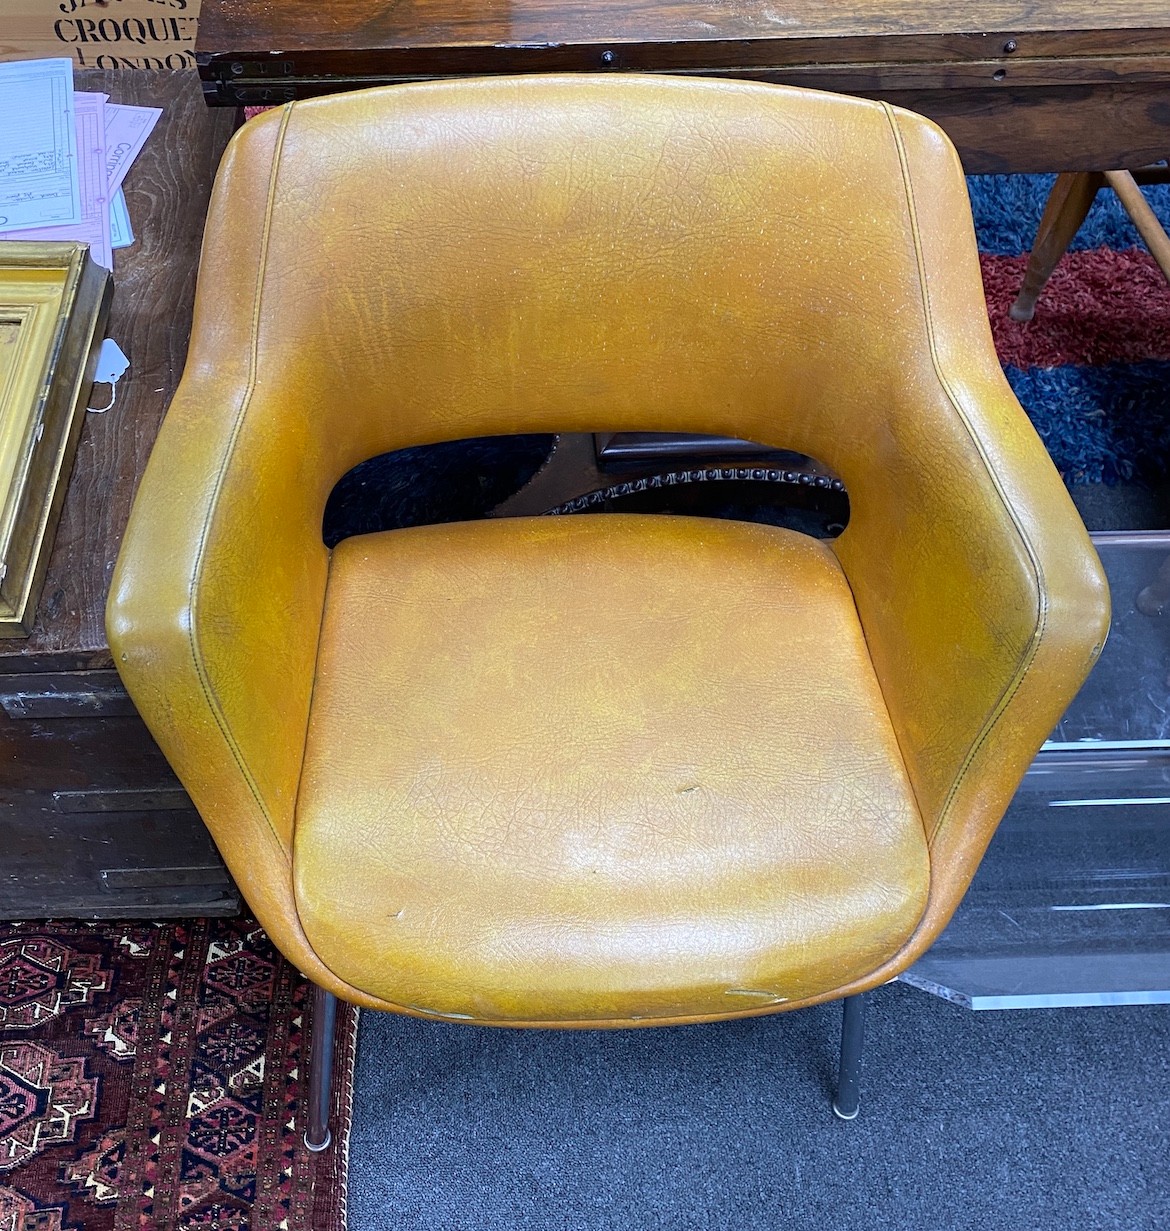 An Ollie Mannermaa (Finnish) elbow chair, width 63cm, depth 47cm, height 74cm